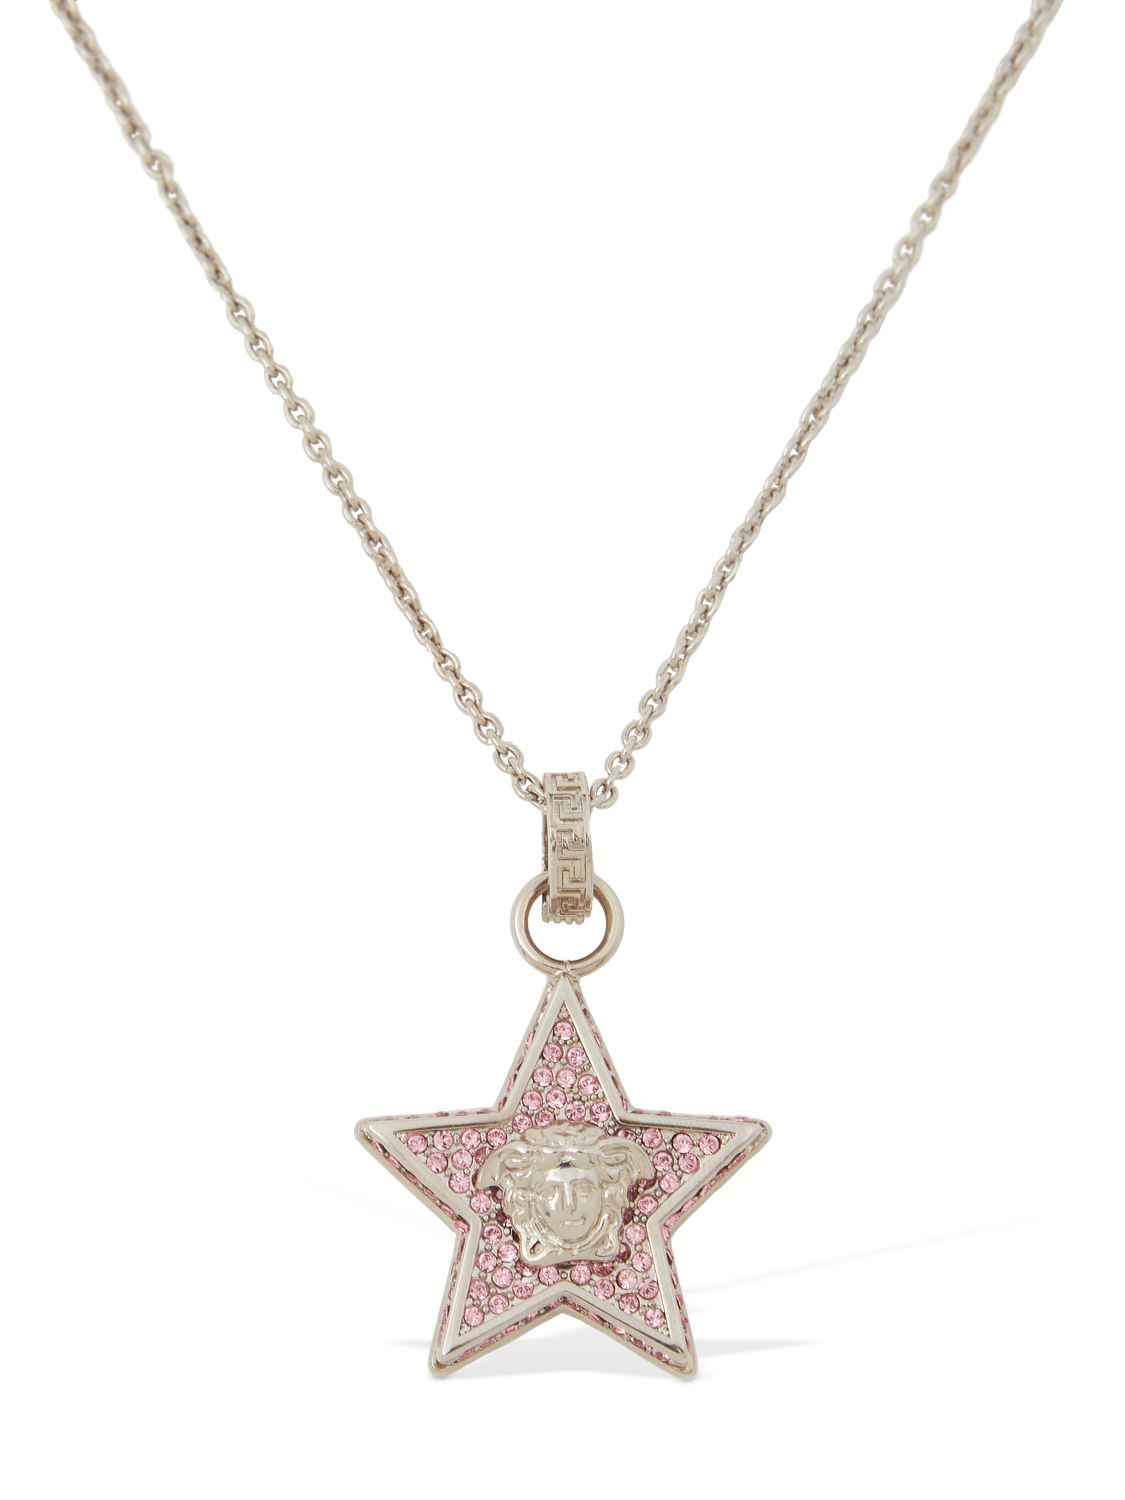 Star & Crystal Medusa Charm Necklace